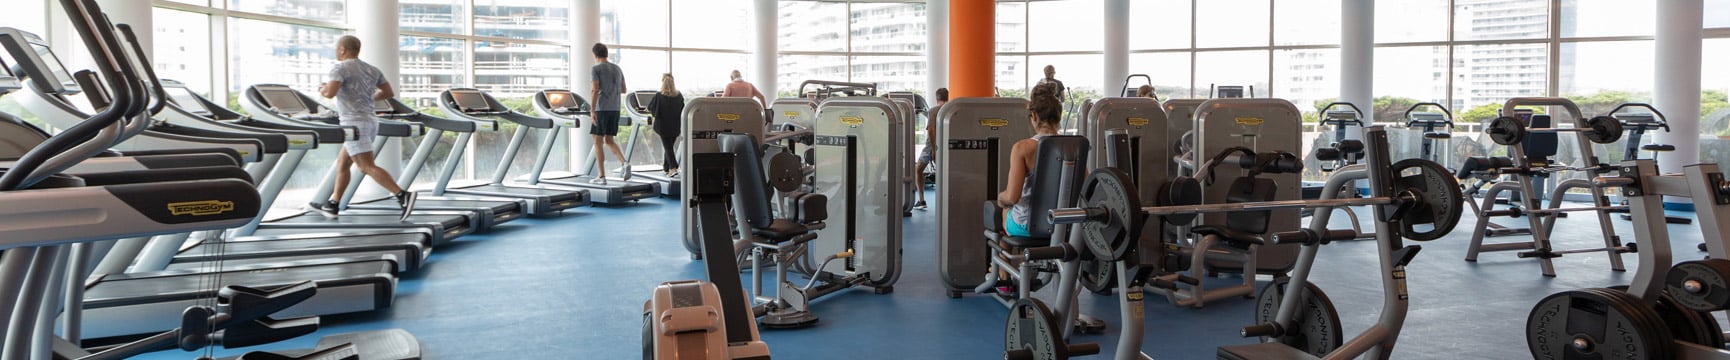 Personas haciendo ejercicio en una moderna sala de aparatos